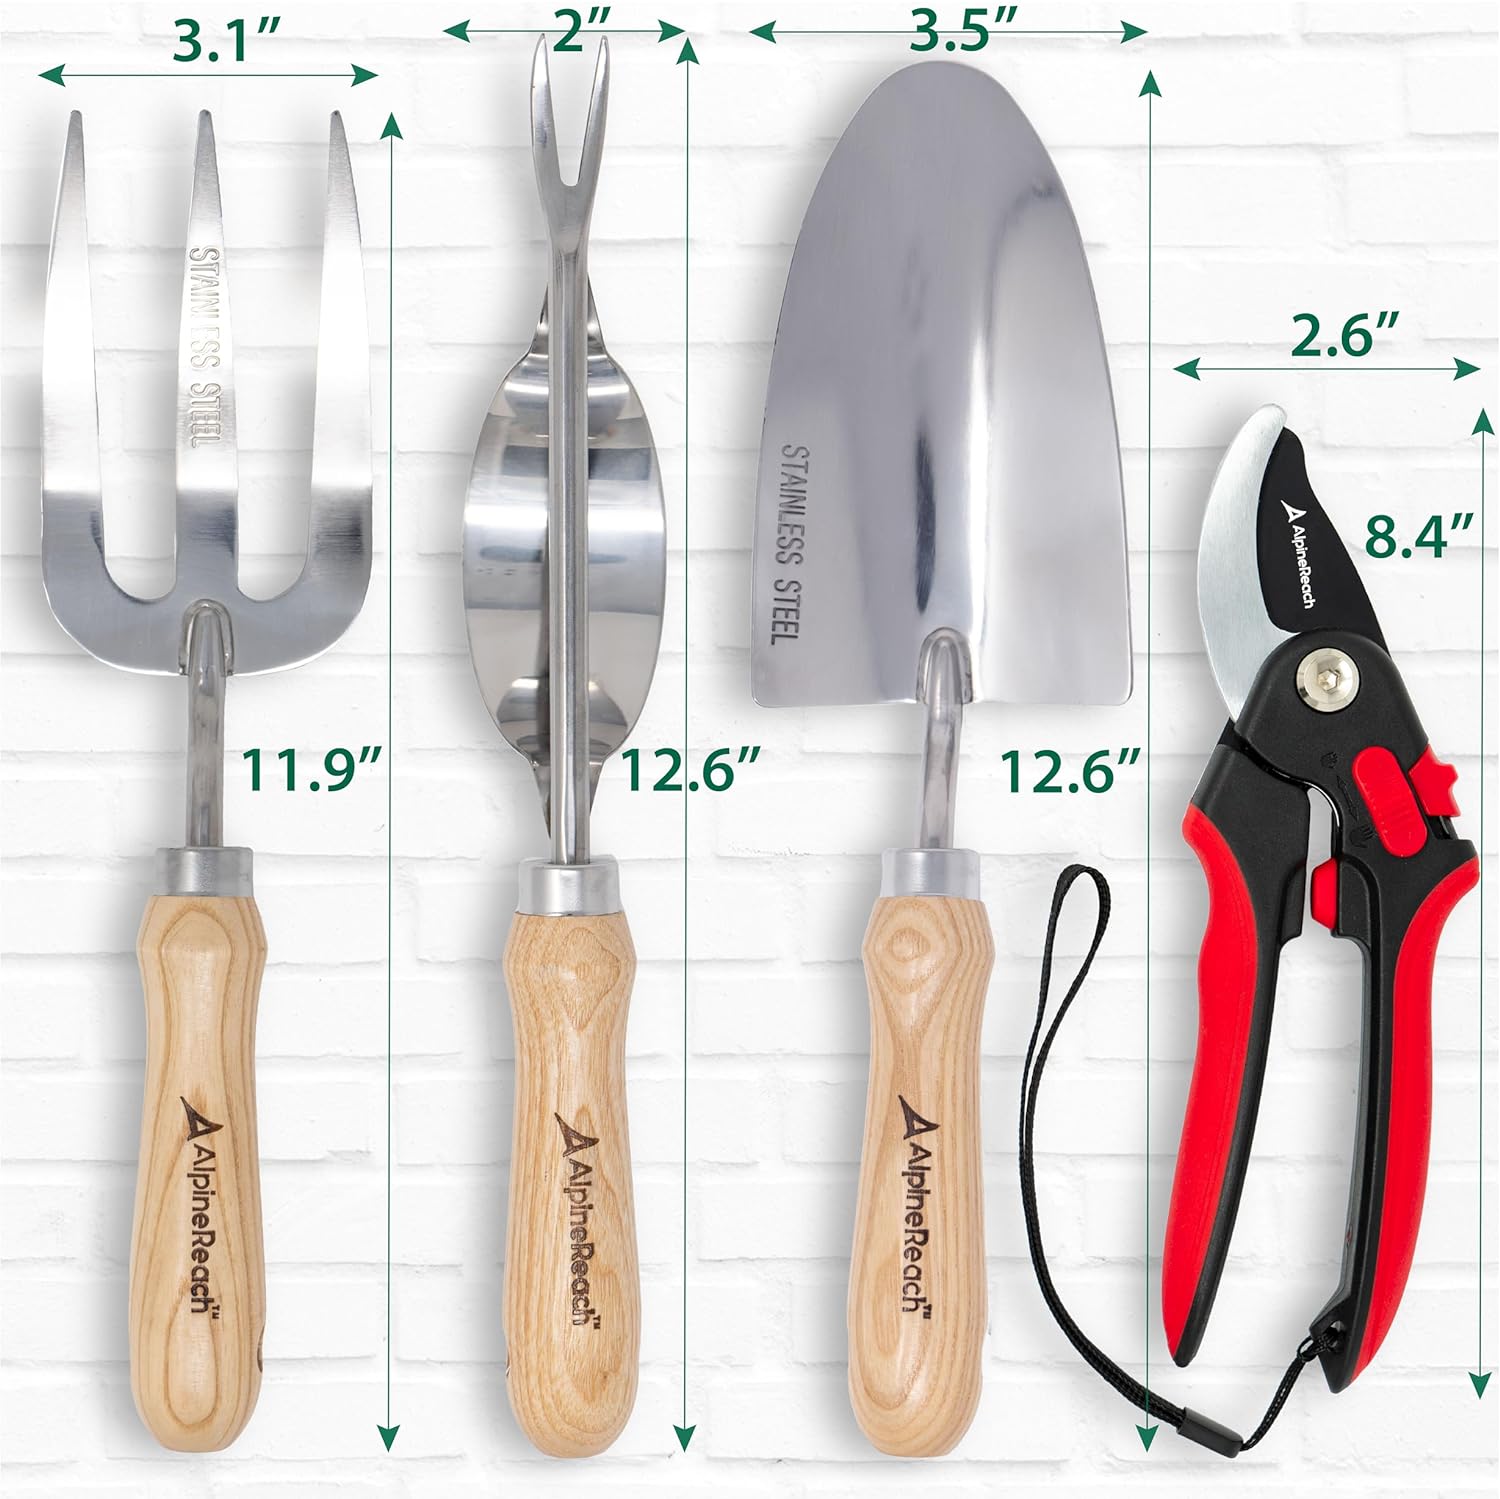 AlpineReach Garden Tool Set - Premium 4 Piece Kit for Gardening, Bypass Pruning Shears, Trowel, Fork, Weeder - AlpineReach